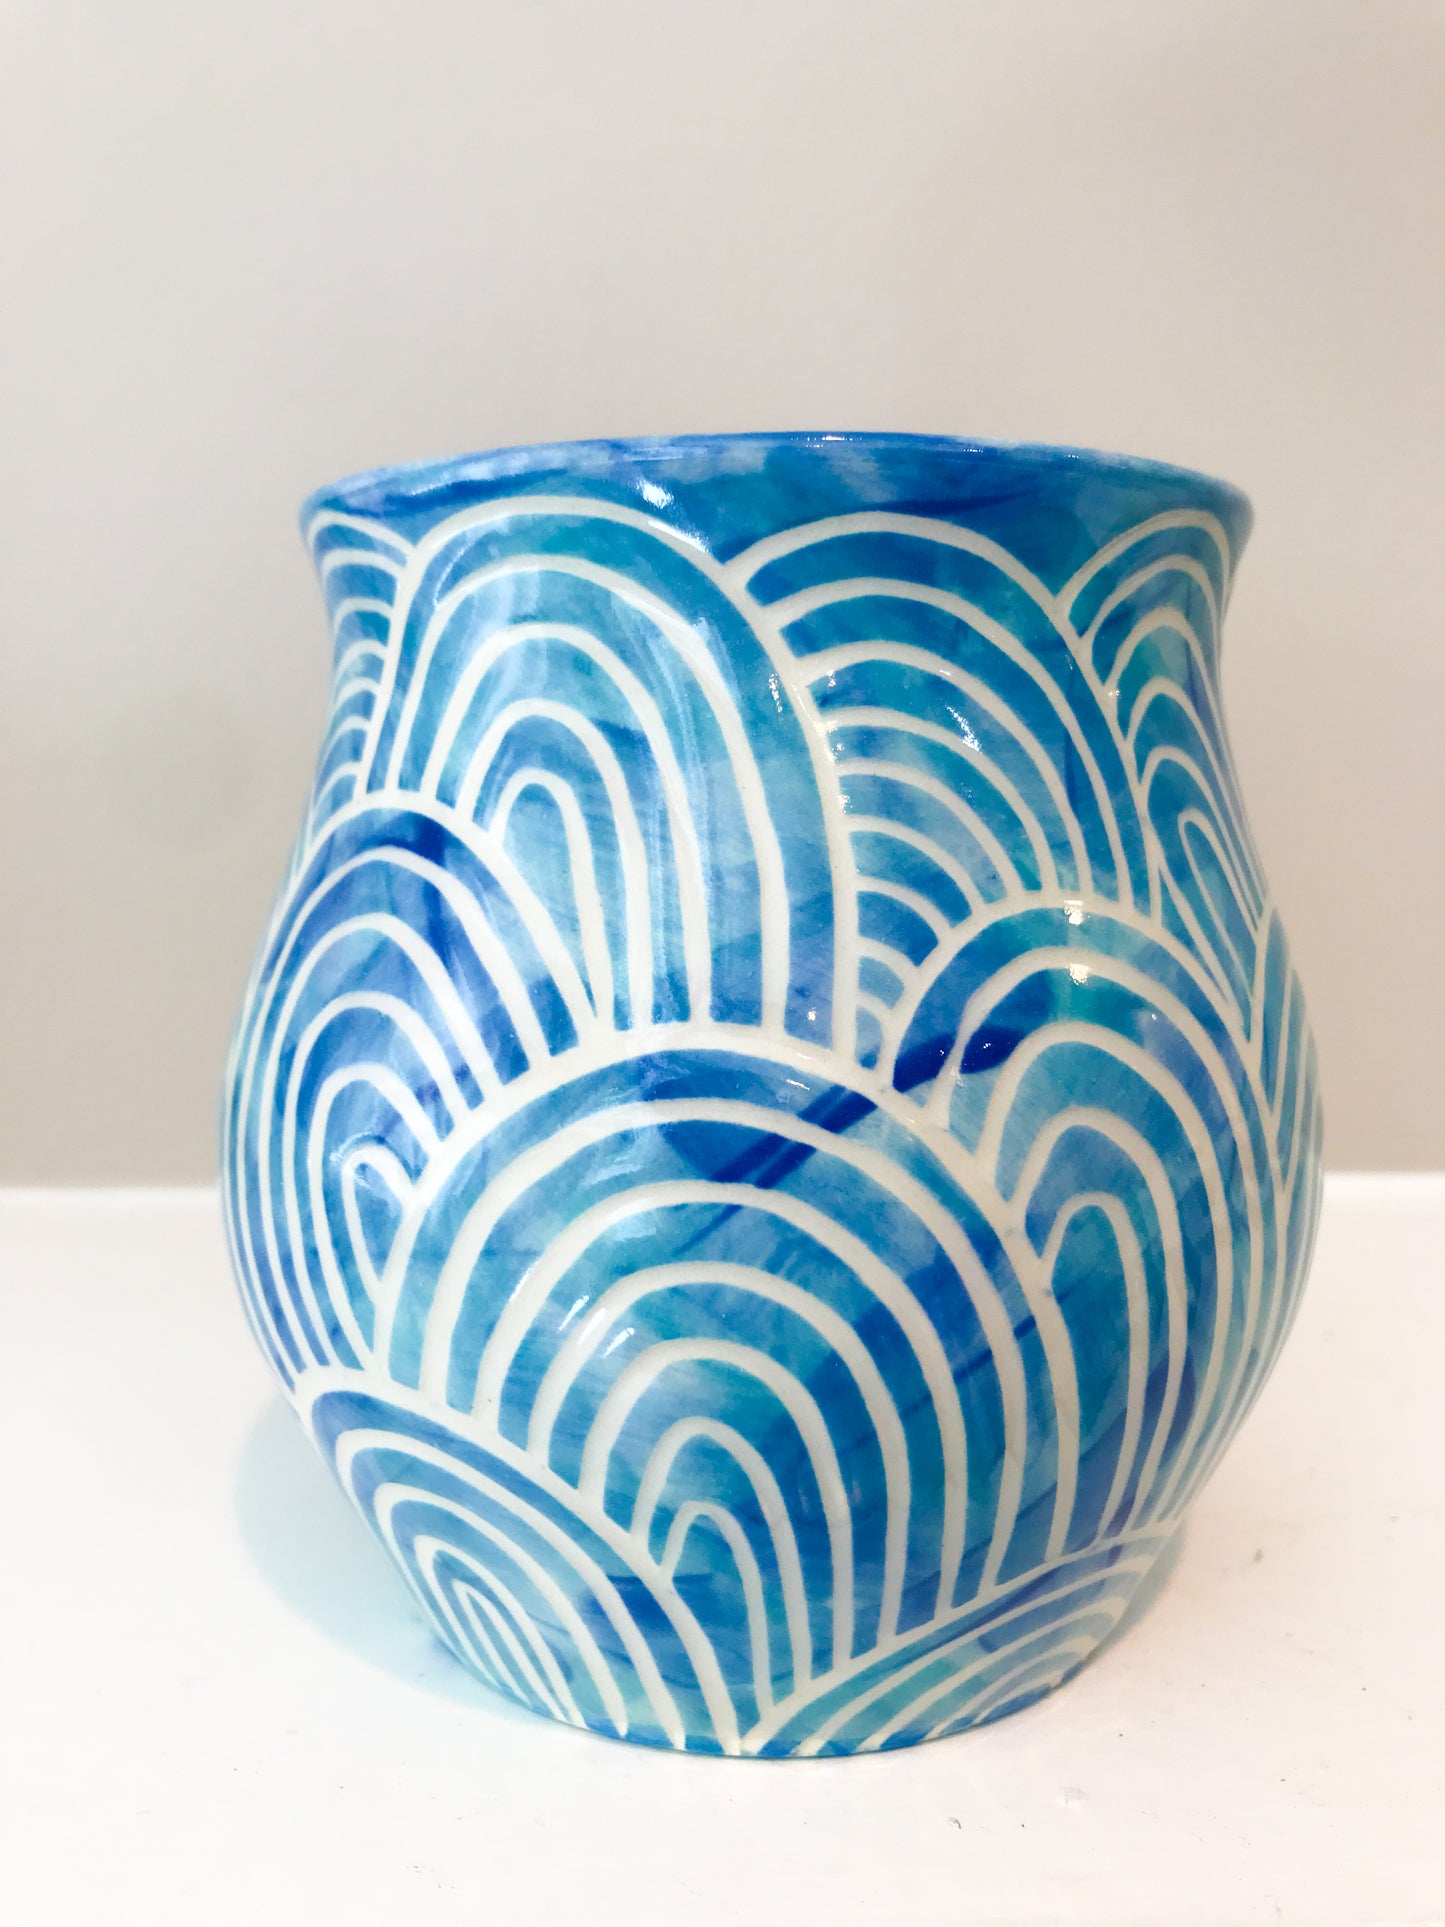 Sealife Vase or Cup - Ocean Waves